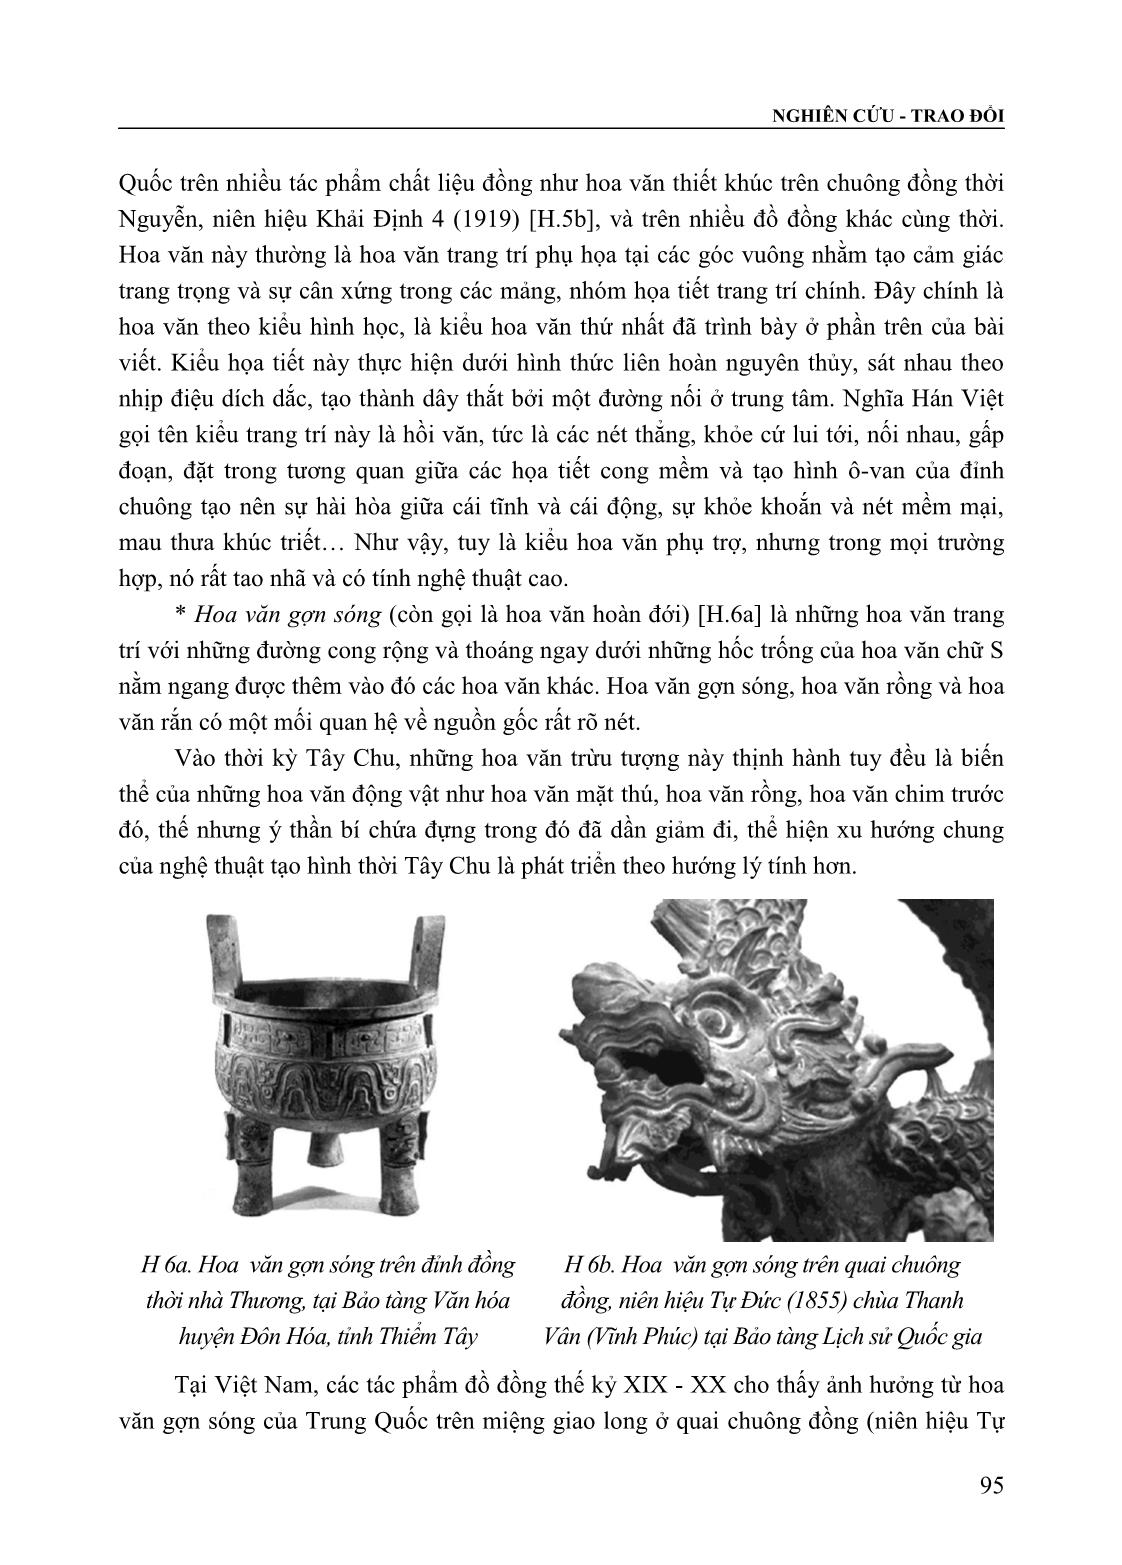 Tạo hình đồ đồng dân gian Việt Nam thời Nguyễn (Thế kỷ XIX - XX) trong bối cảnh giao lưu và tiếp biến với đồ đồng Trung Quốc trang 6